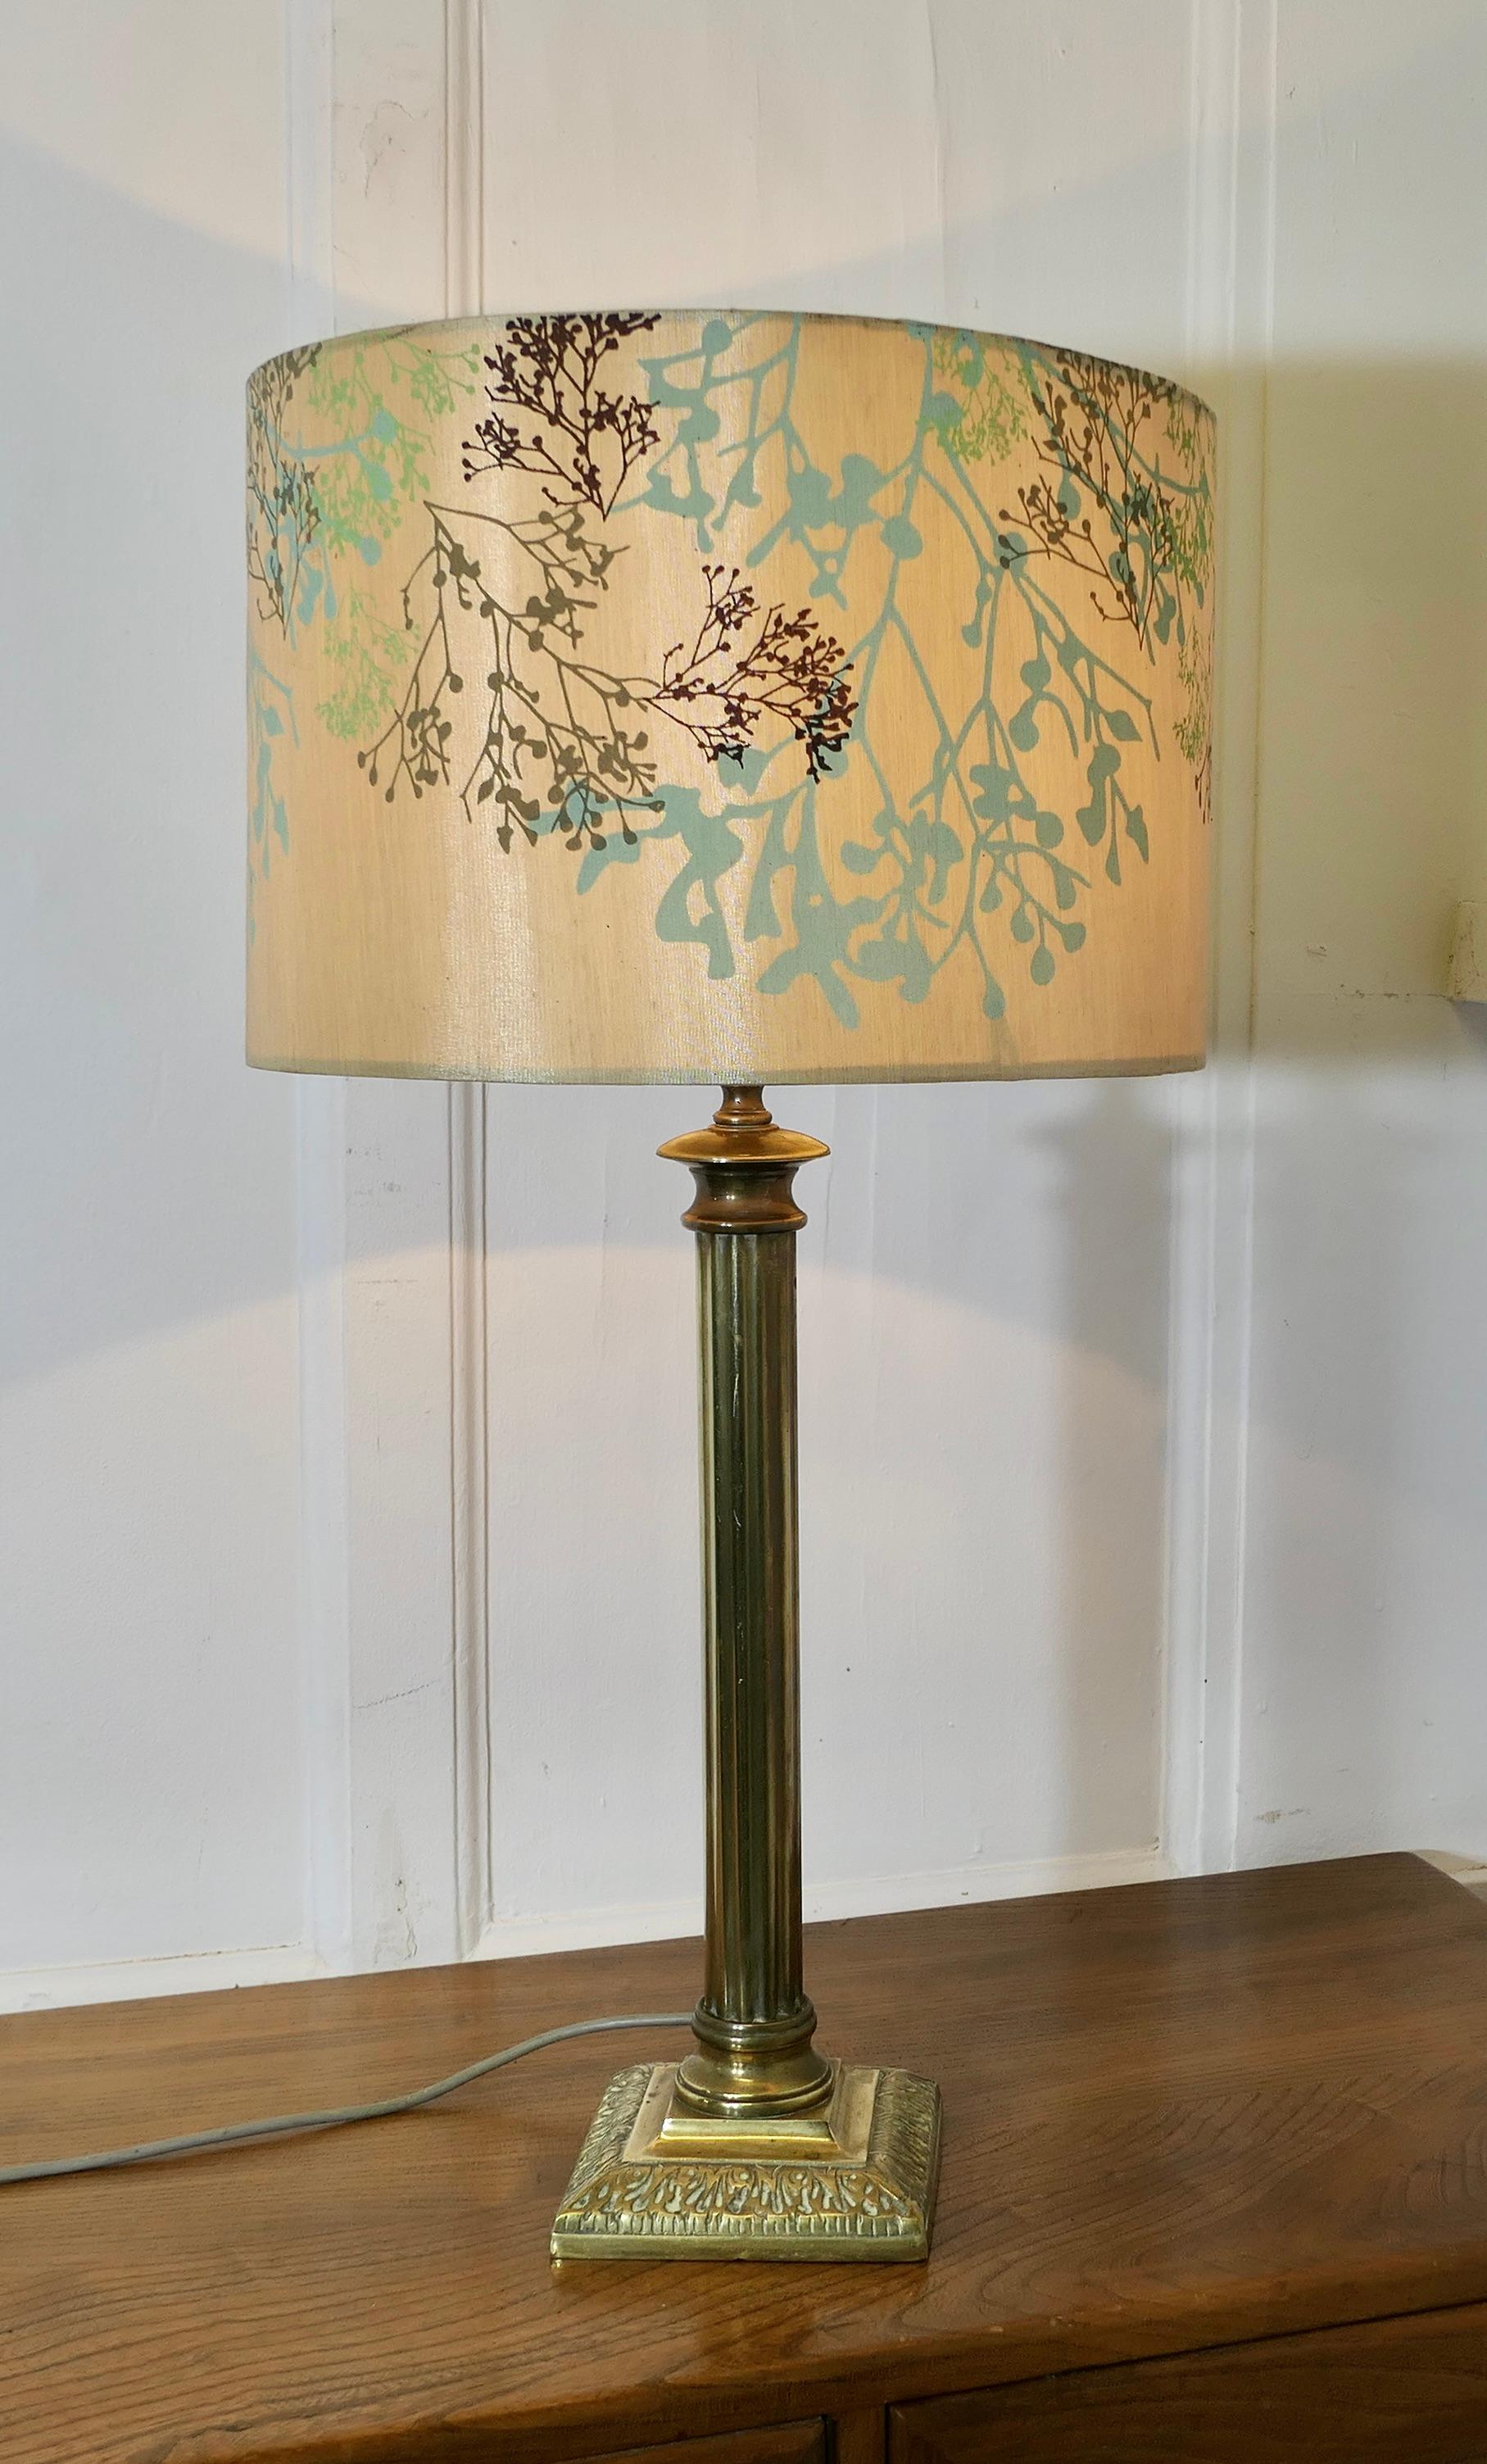 Lampe de table à colonne corinthienne en laiton avec abat-jour

Cette lampe est très attrayante. Elle possède une lourde colonne de style corinthien posée sur une base rectangulaire étagée. Elle est livrée avec un abat-jour en lin de couleur neutre,